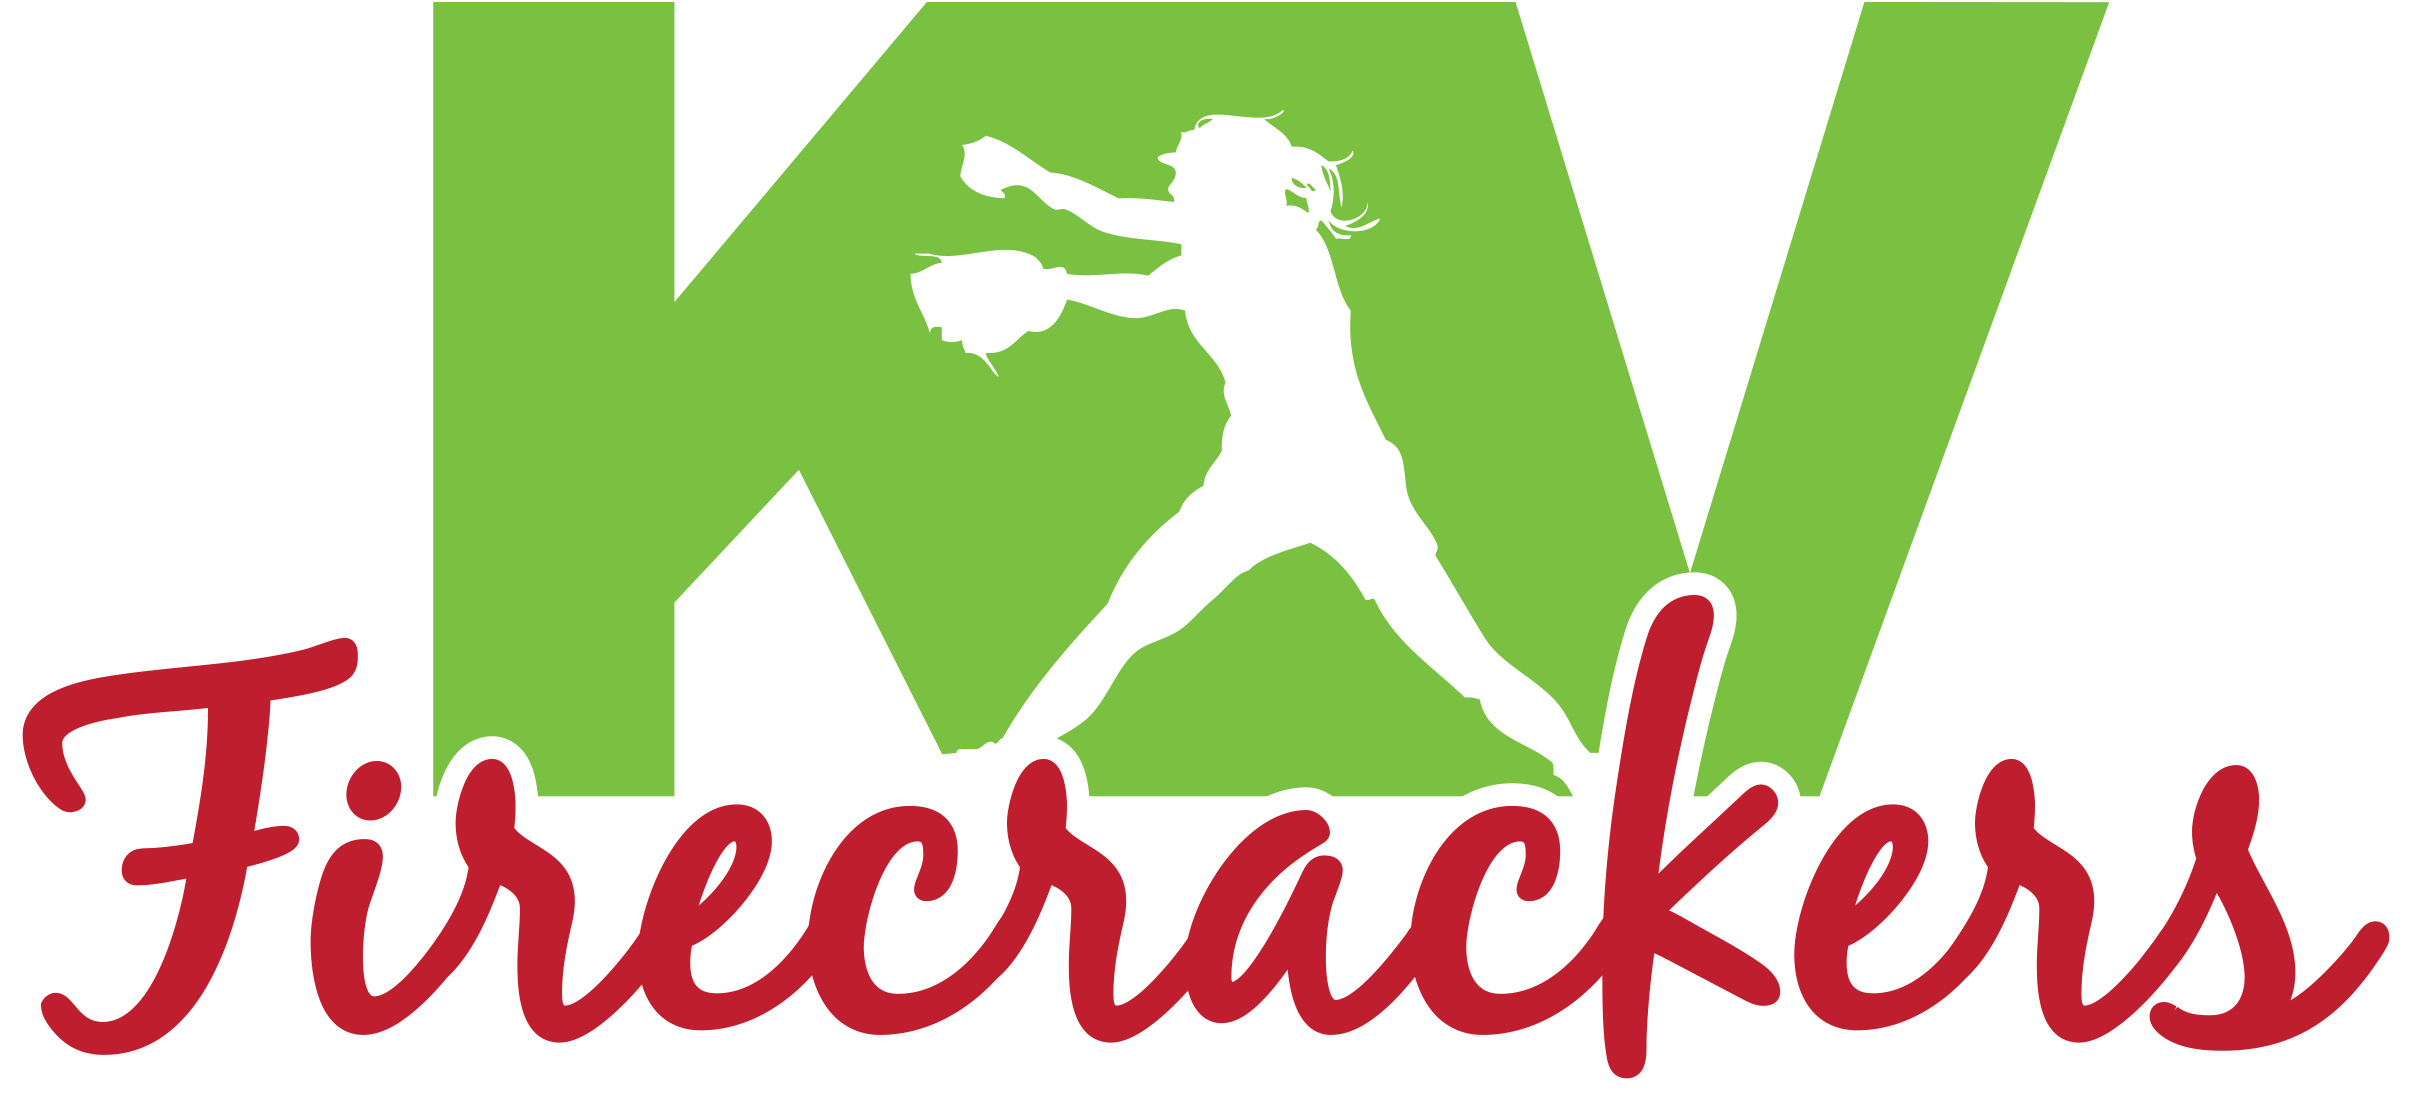 KV_Softball_Firecrackers_logo_GreenOverRed